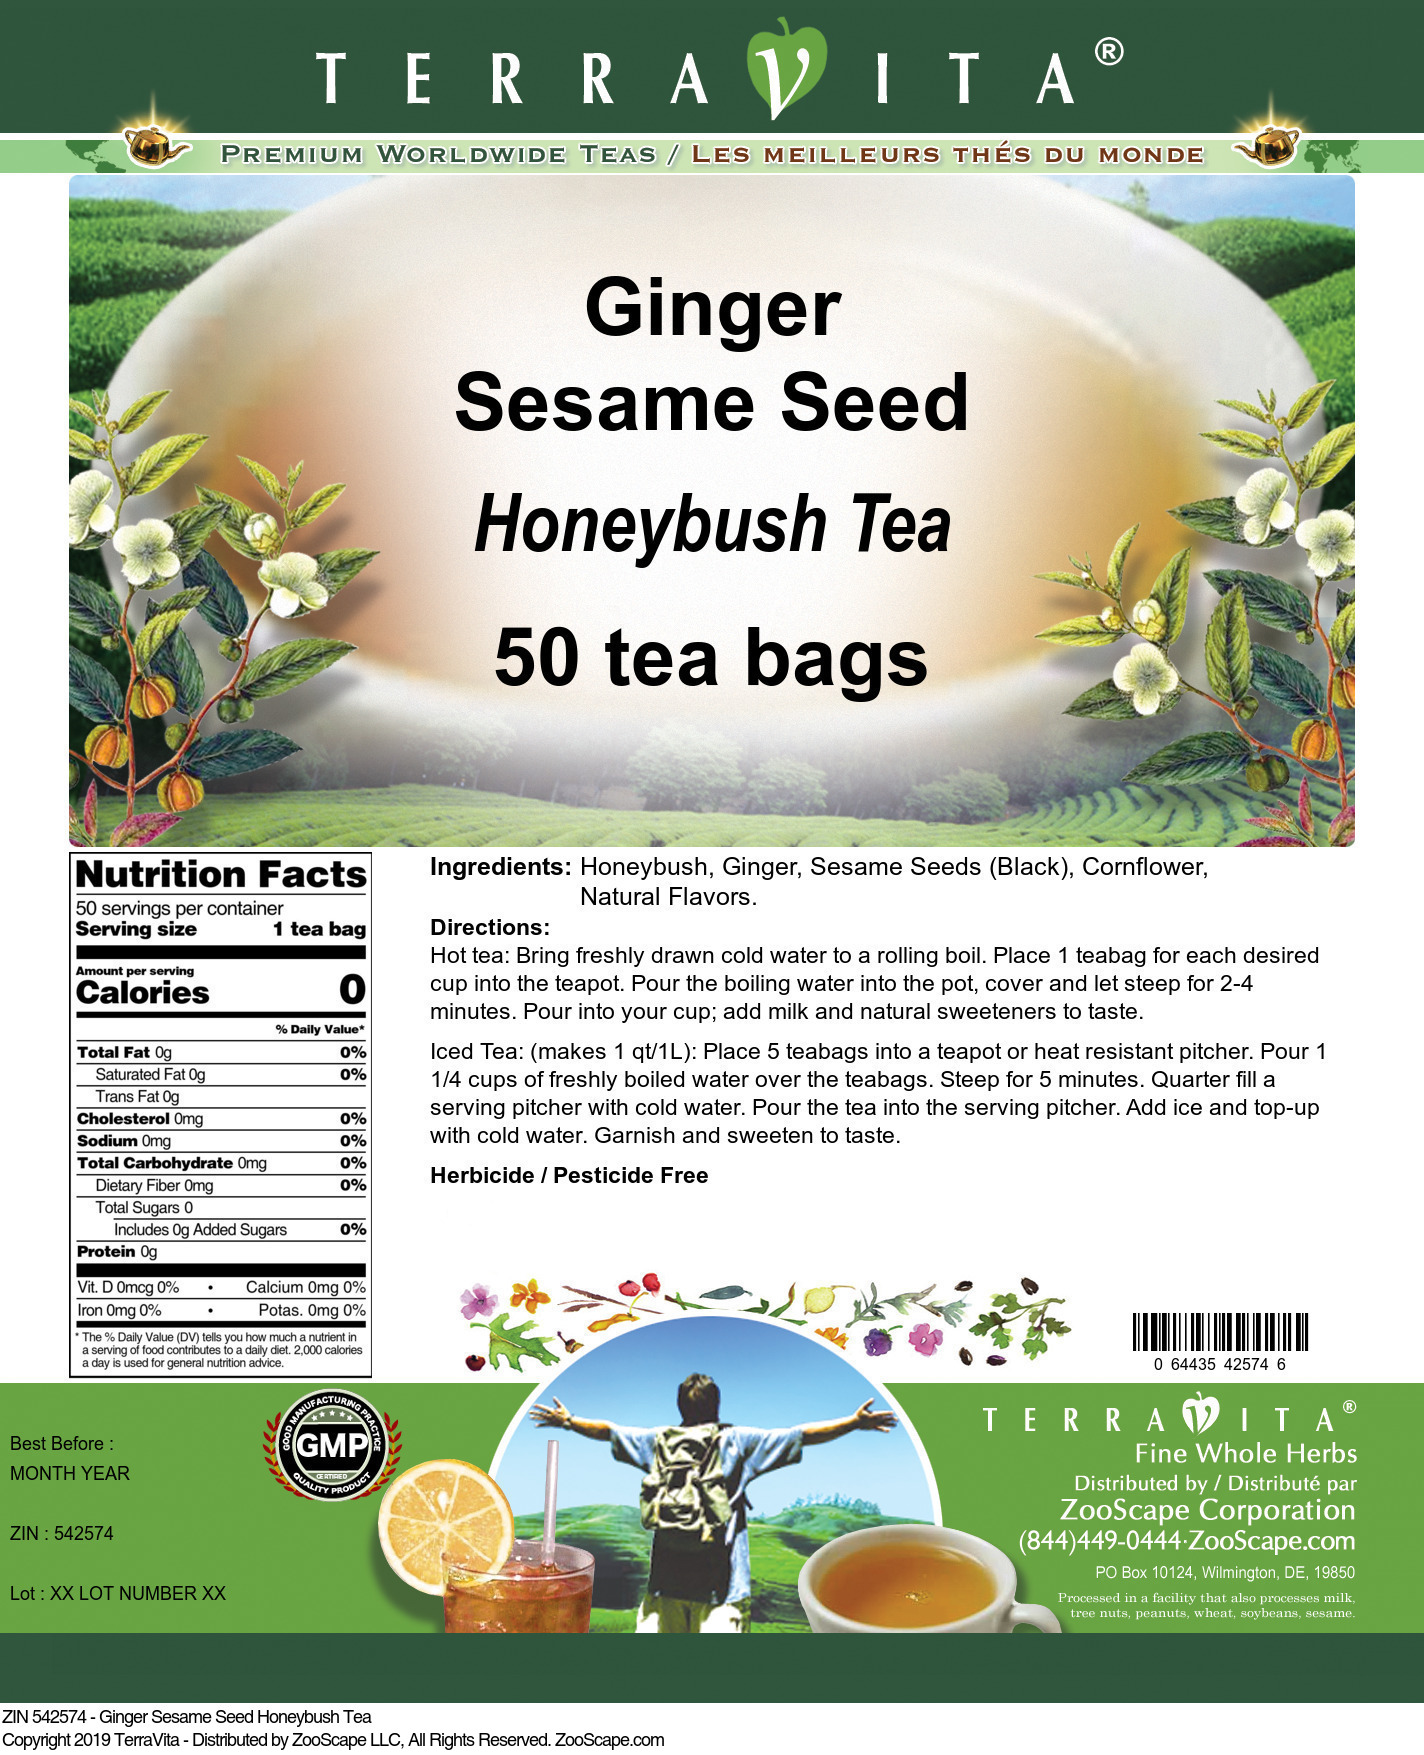 Ginger Sesame Seed Honeybush Tea - Label